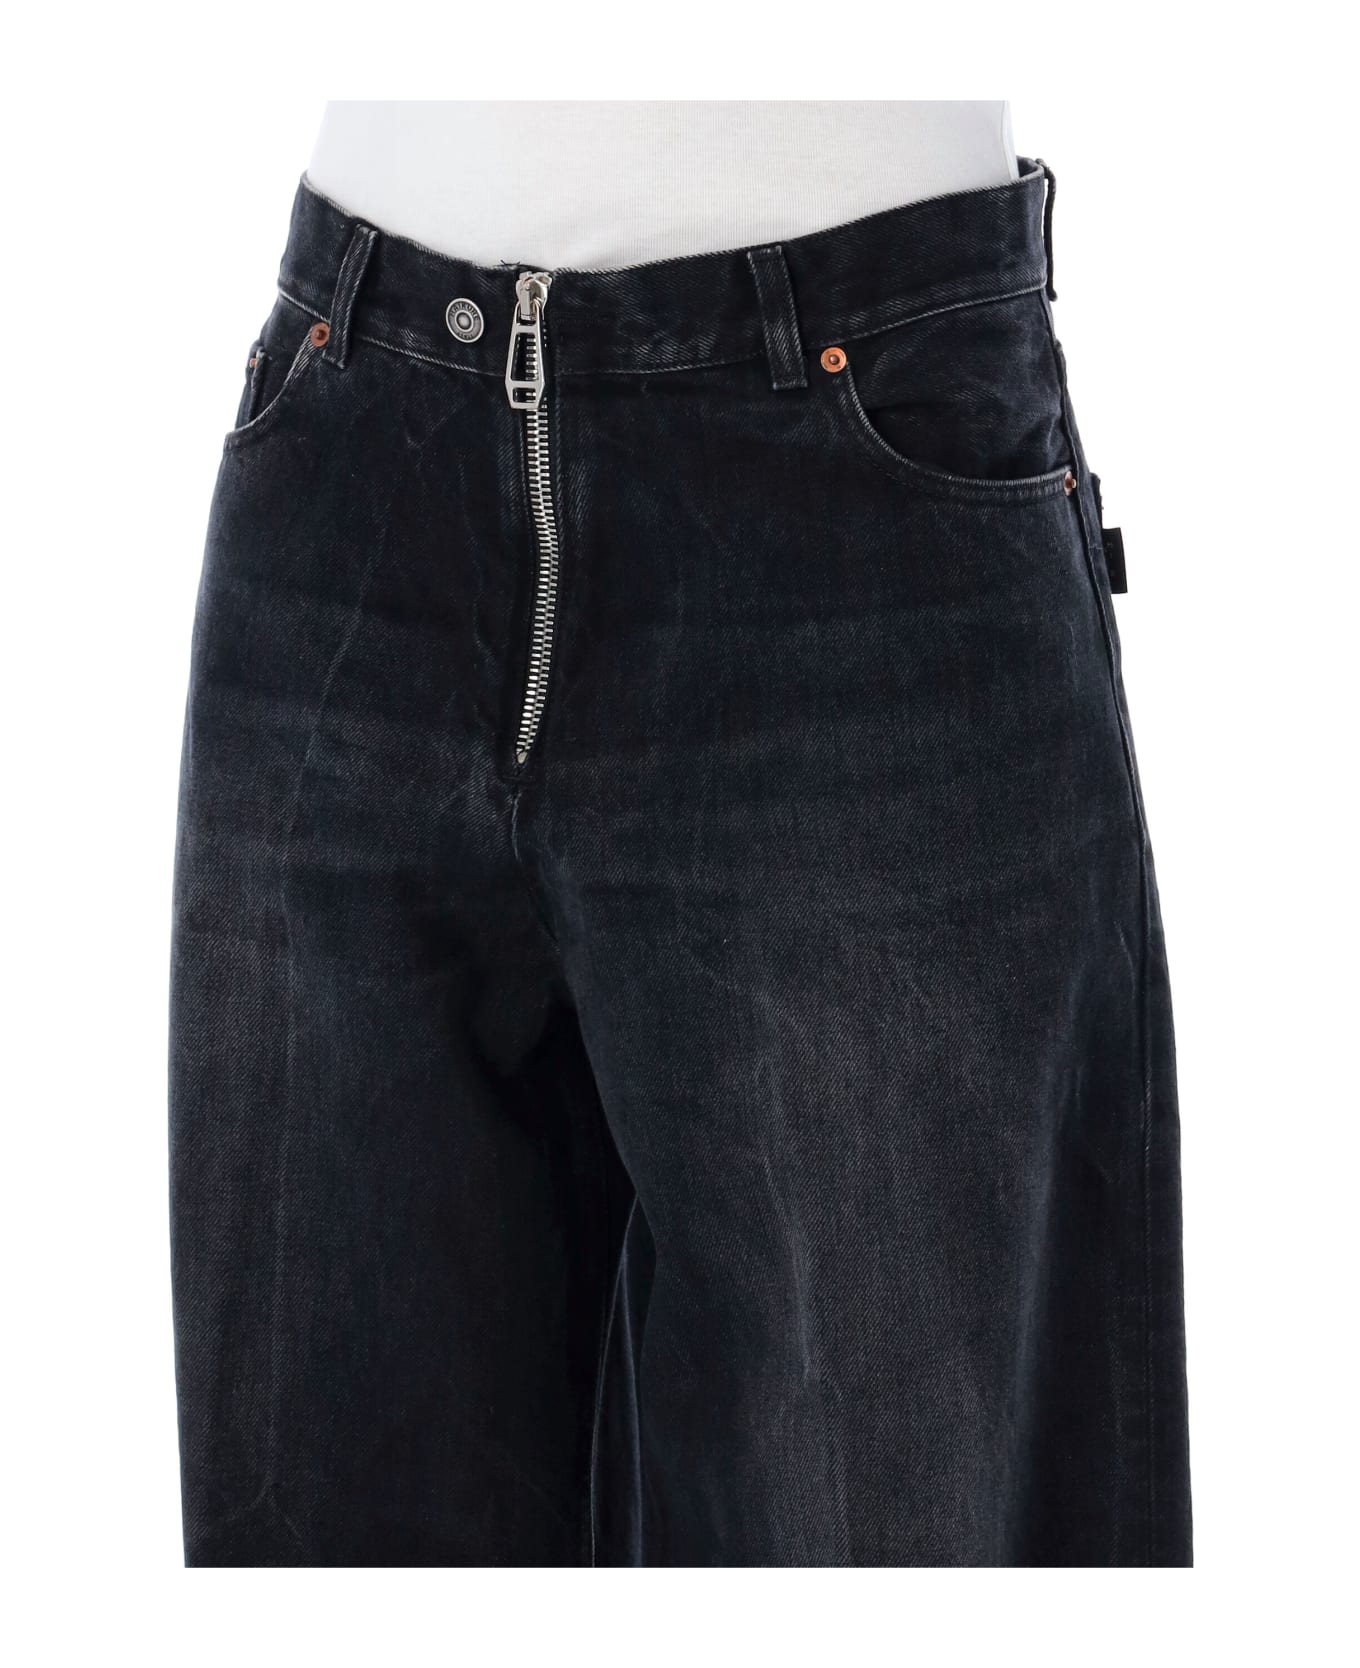 Haikure Bethany Zipped Jeans - BASSANO BLACK デニム